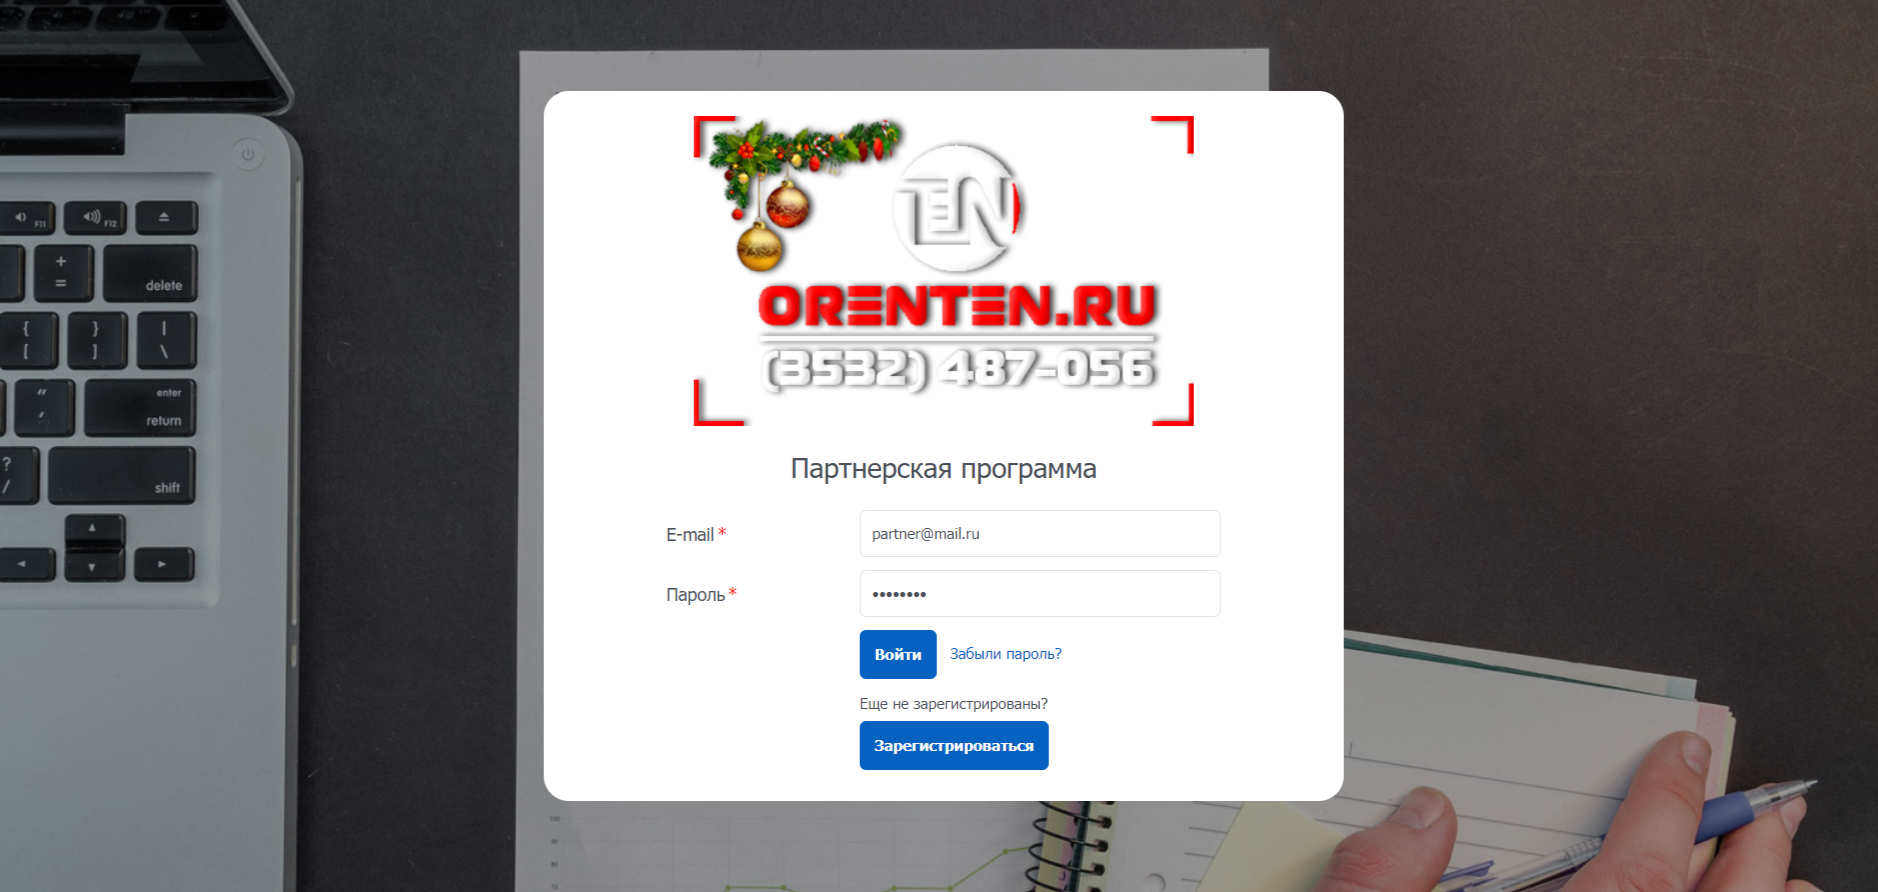 Партнерская программа Компании ORENTEN.RU